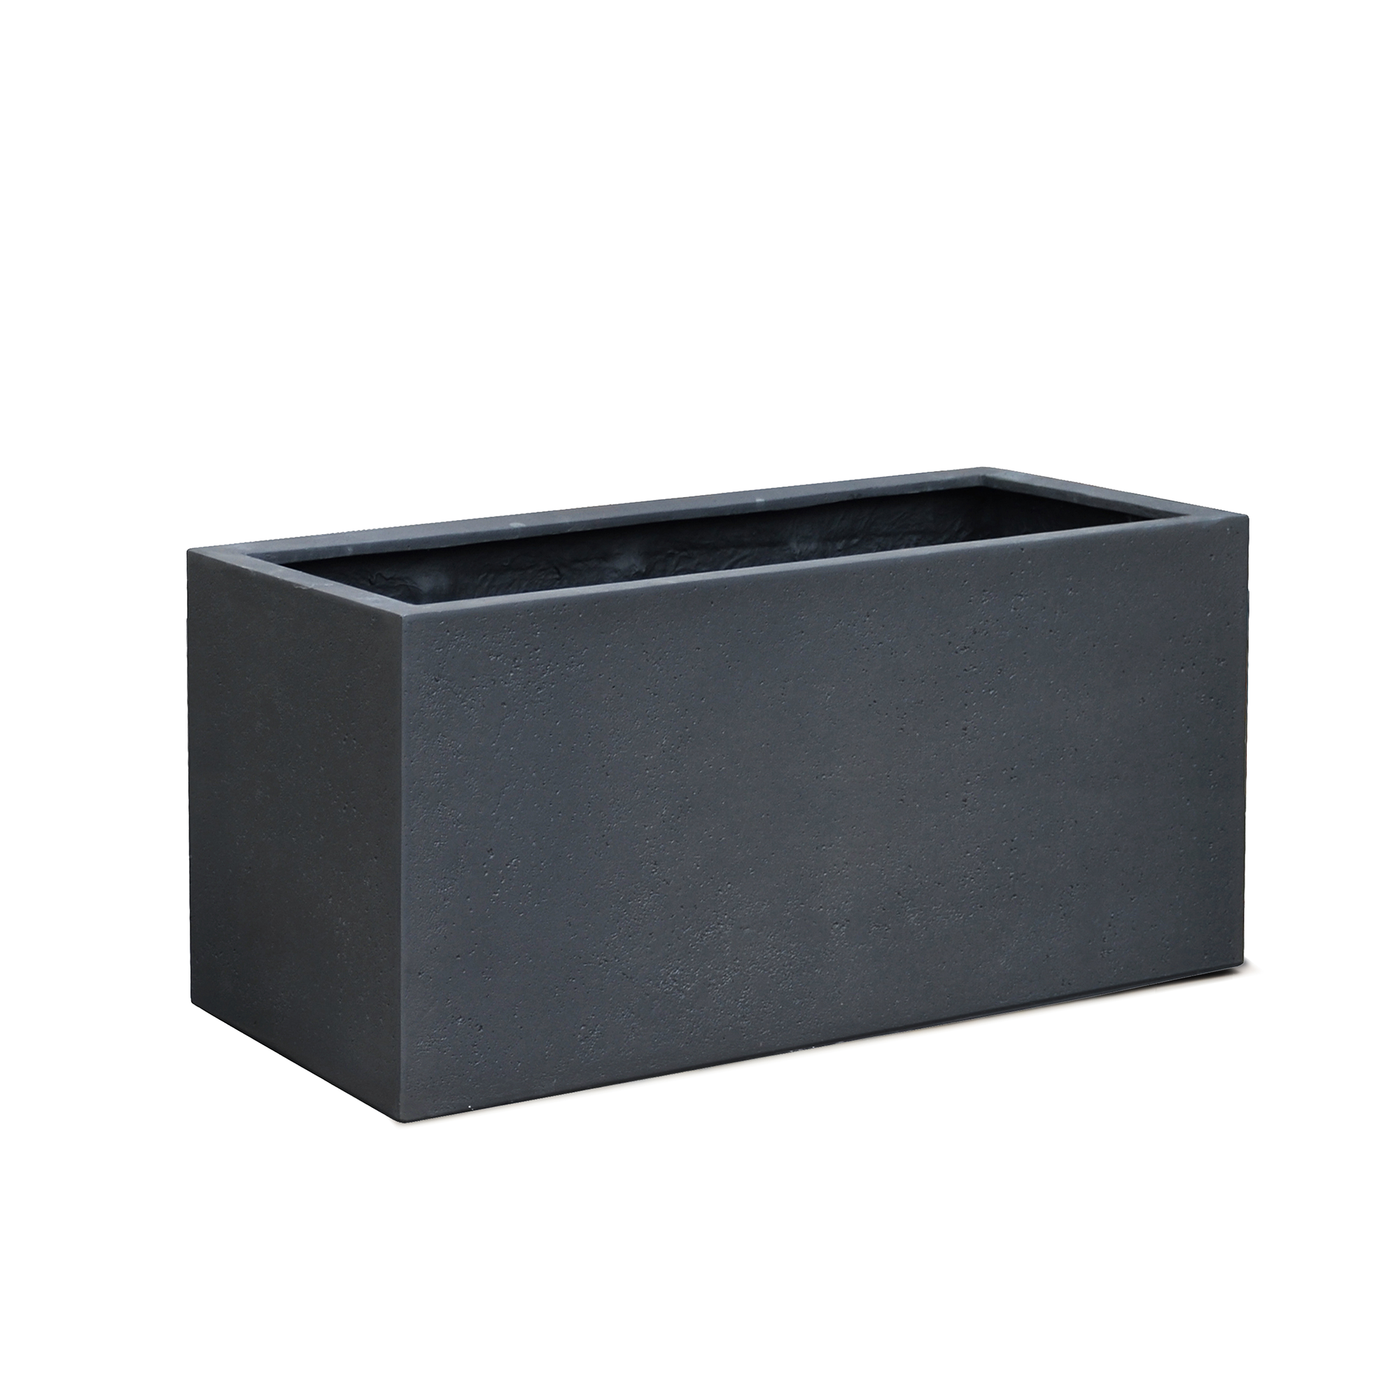 Box Concrete Surface Charcoal